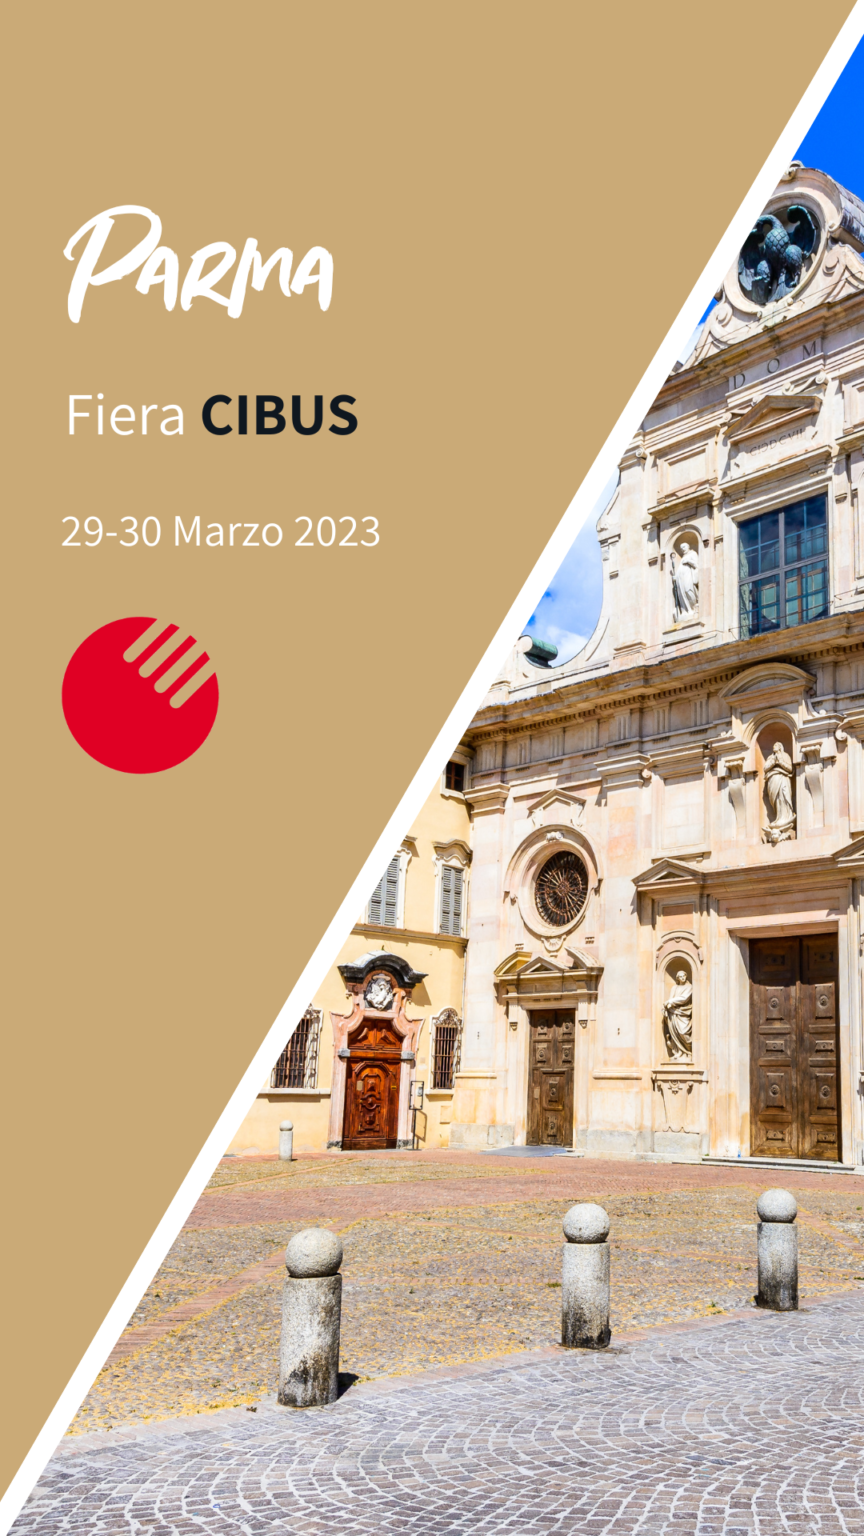 Parma, fiera cibus | 29-30 marzo 2023